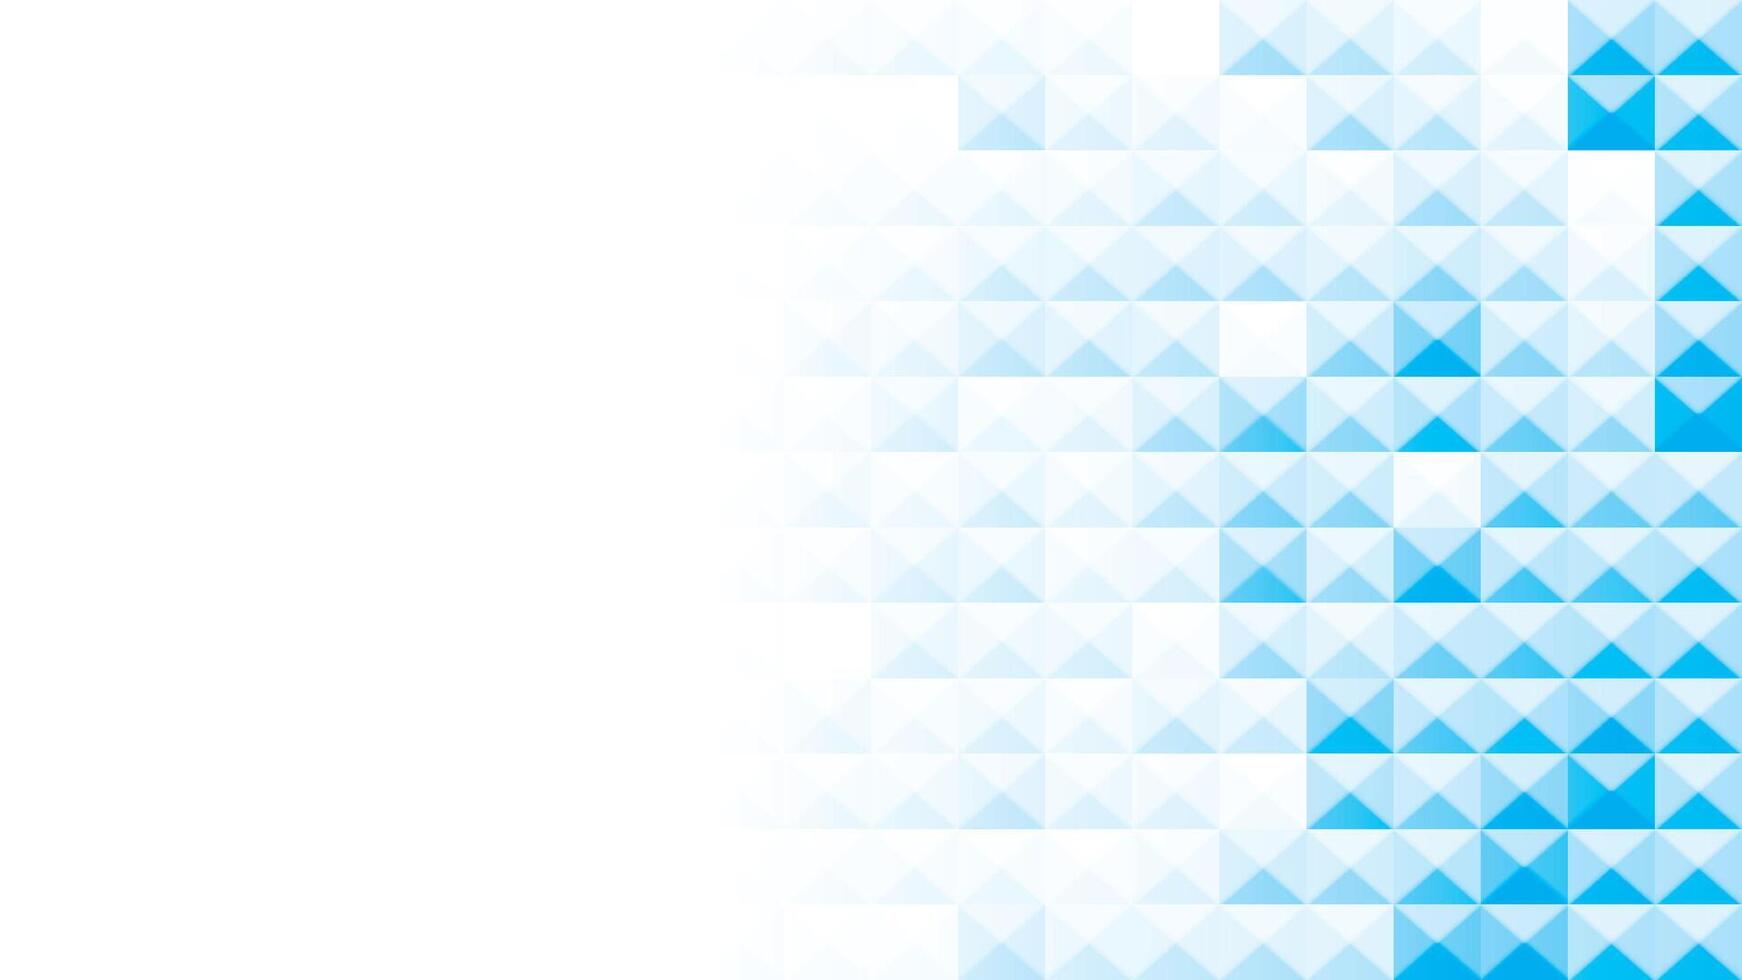 abstrakt Weiß und Blau Farbe, modern Design Streifen Hintergrund mit Rechteck und Dreieck Form. Vektor Illustration.